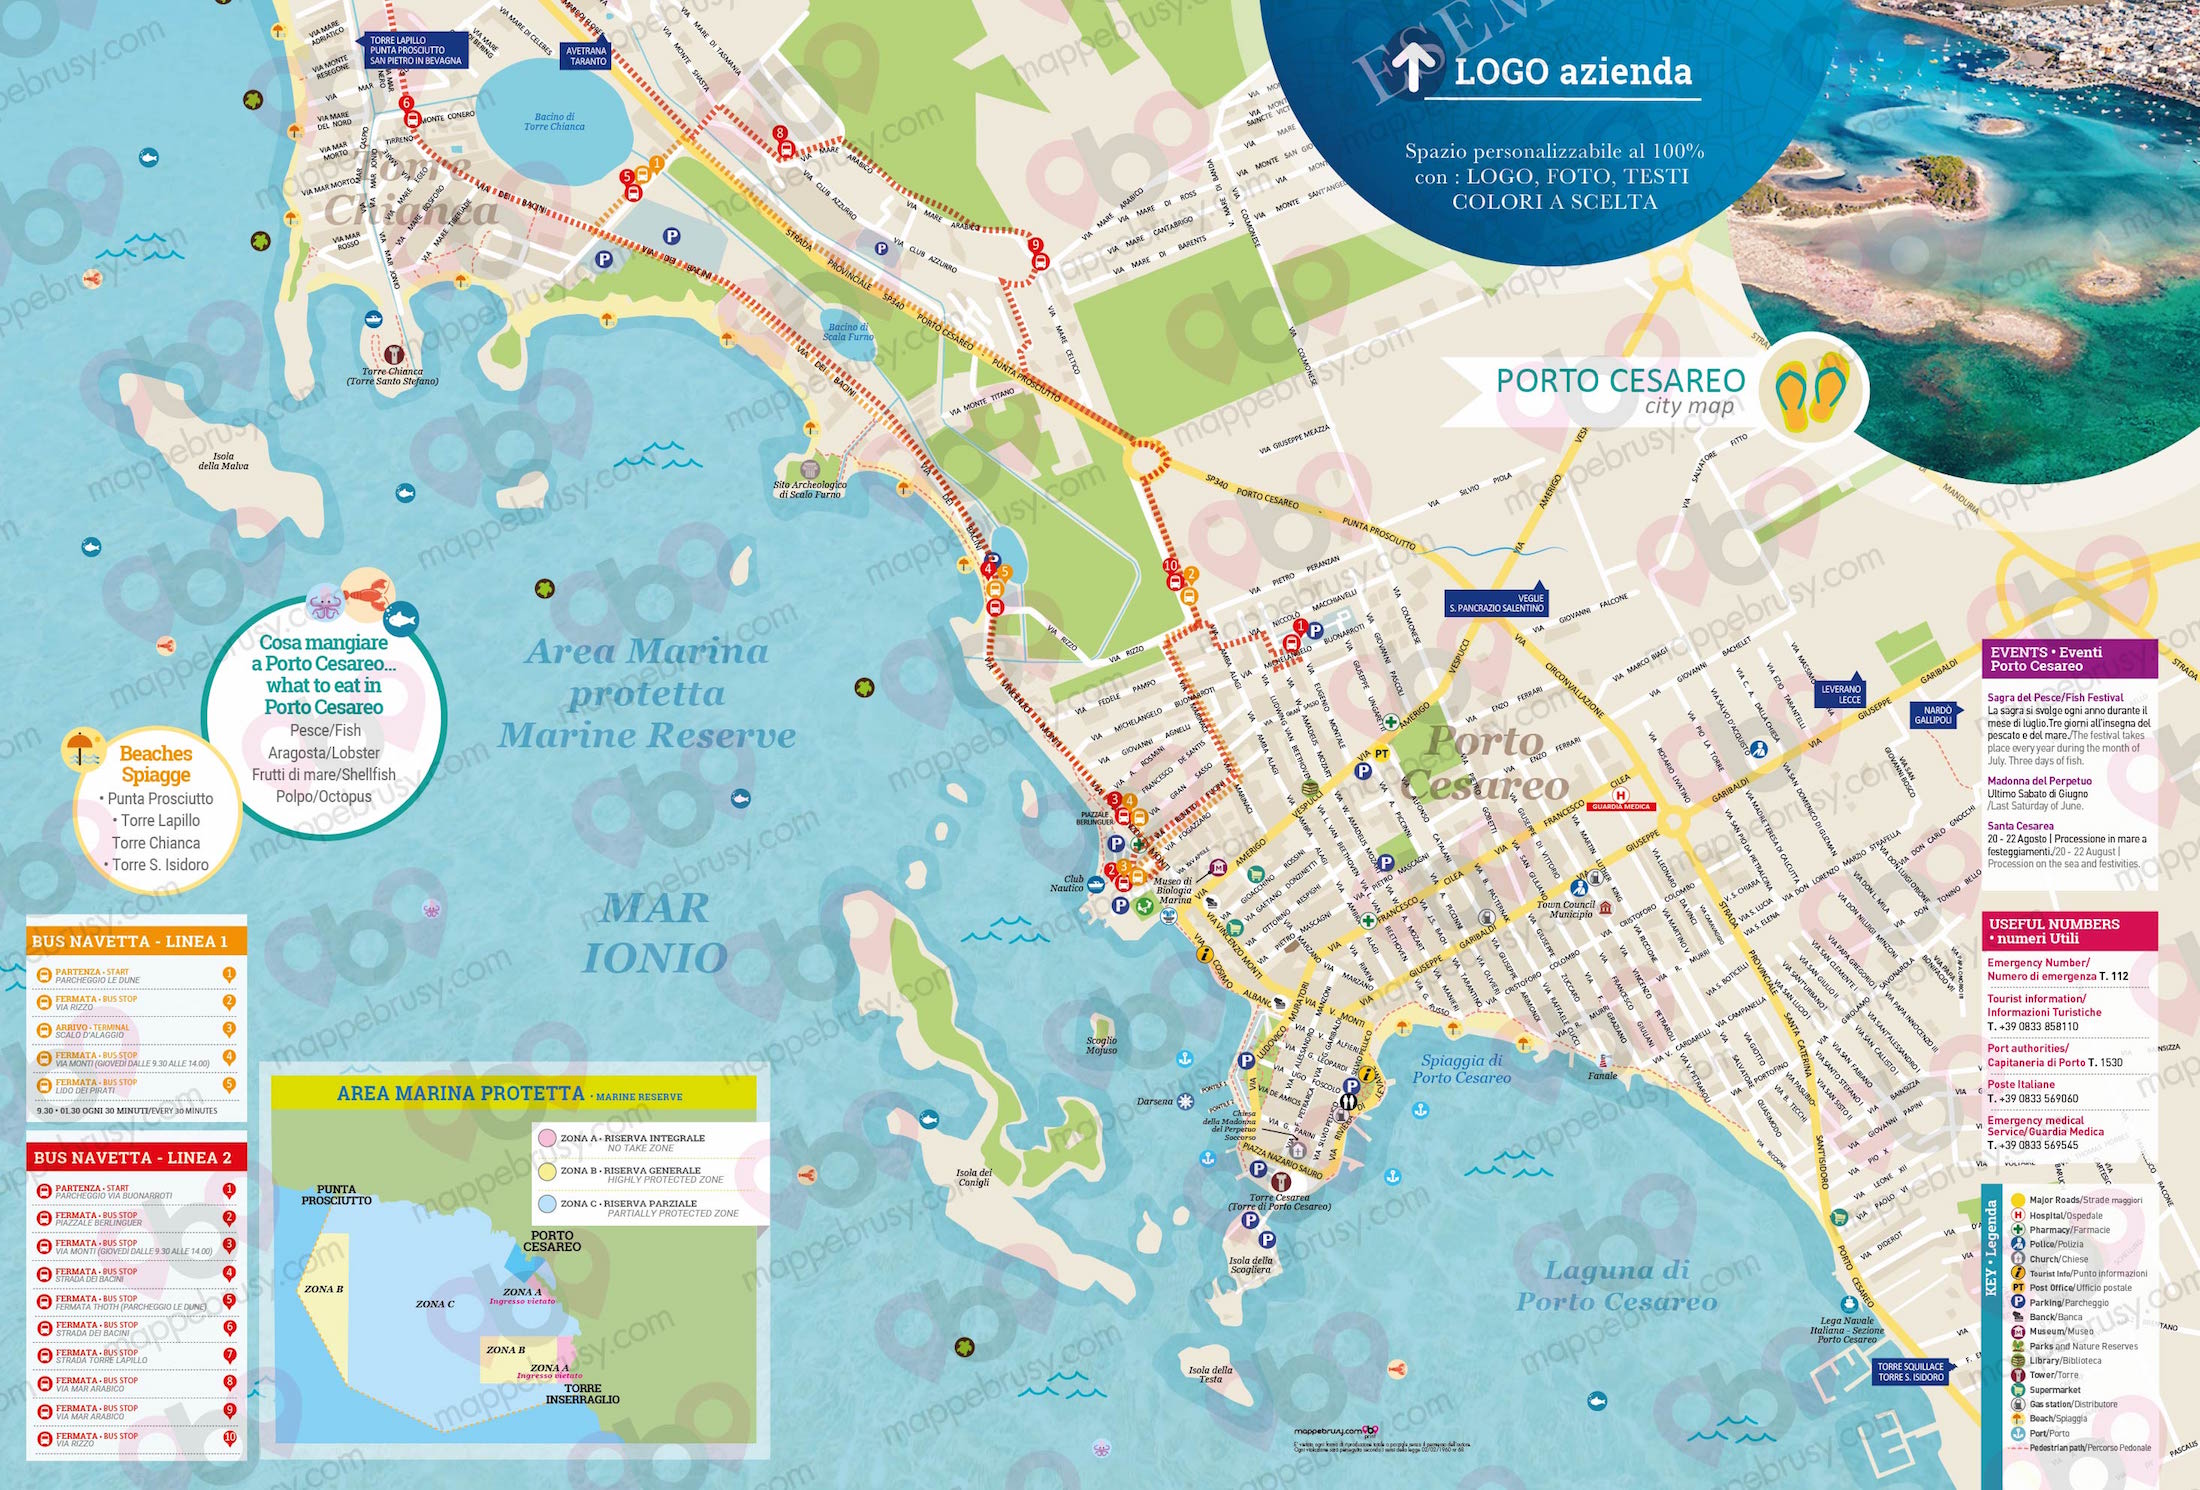 Mappa di Porto Cesareo - Porto Cesareo city map - mappa Porto Cesareo - mappa personalizzata di Porto Cesareo